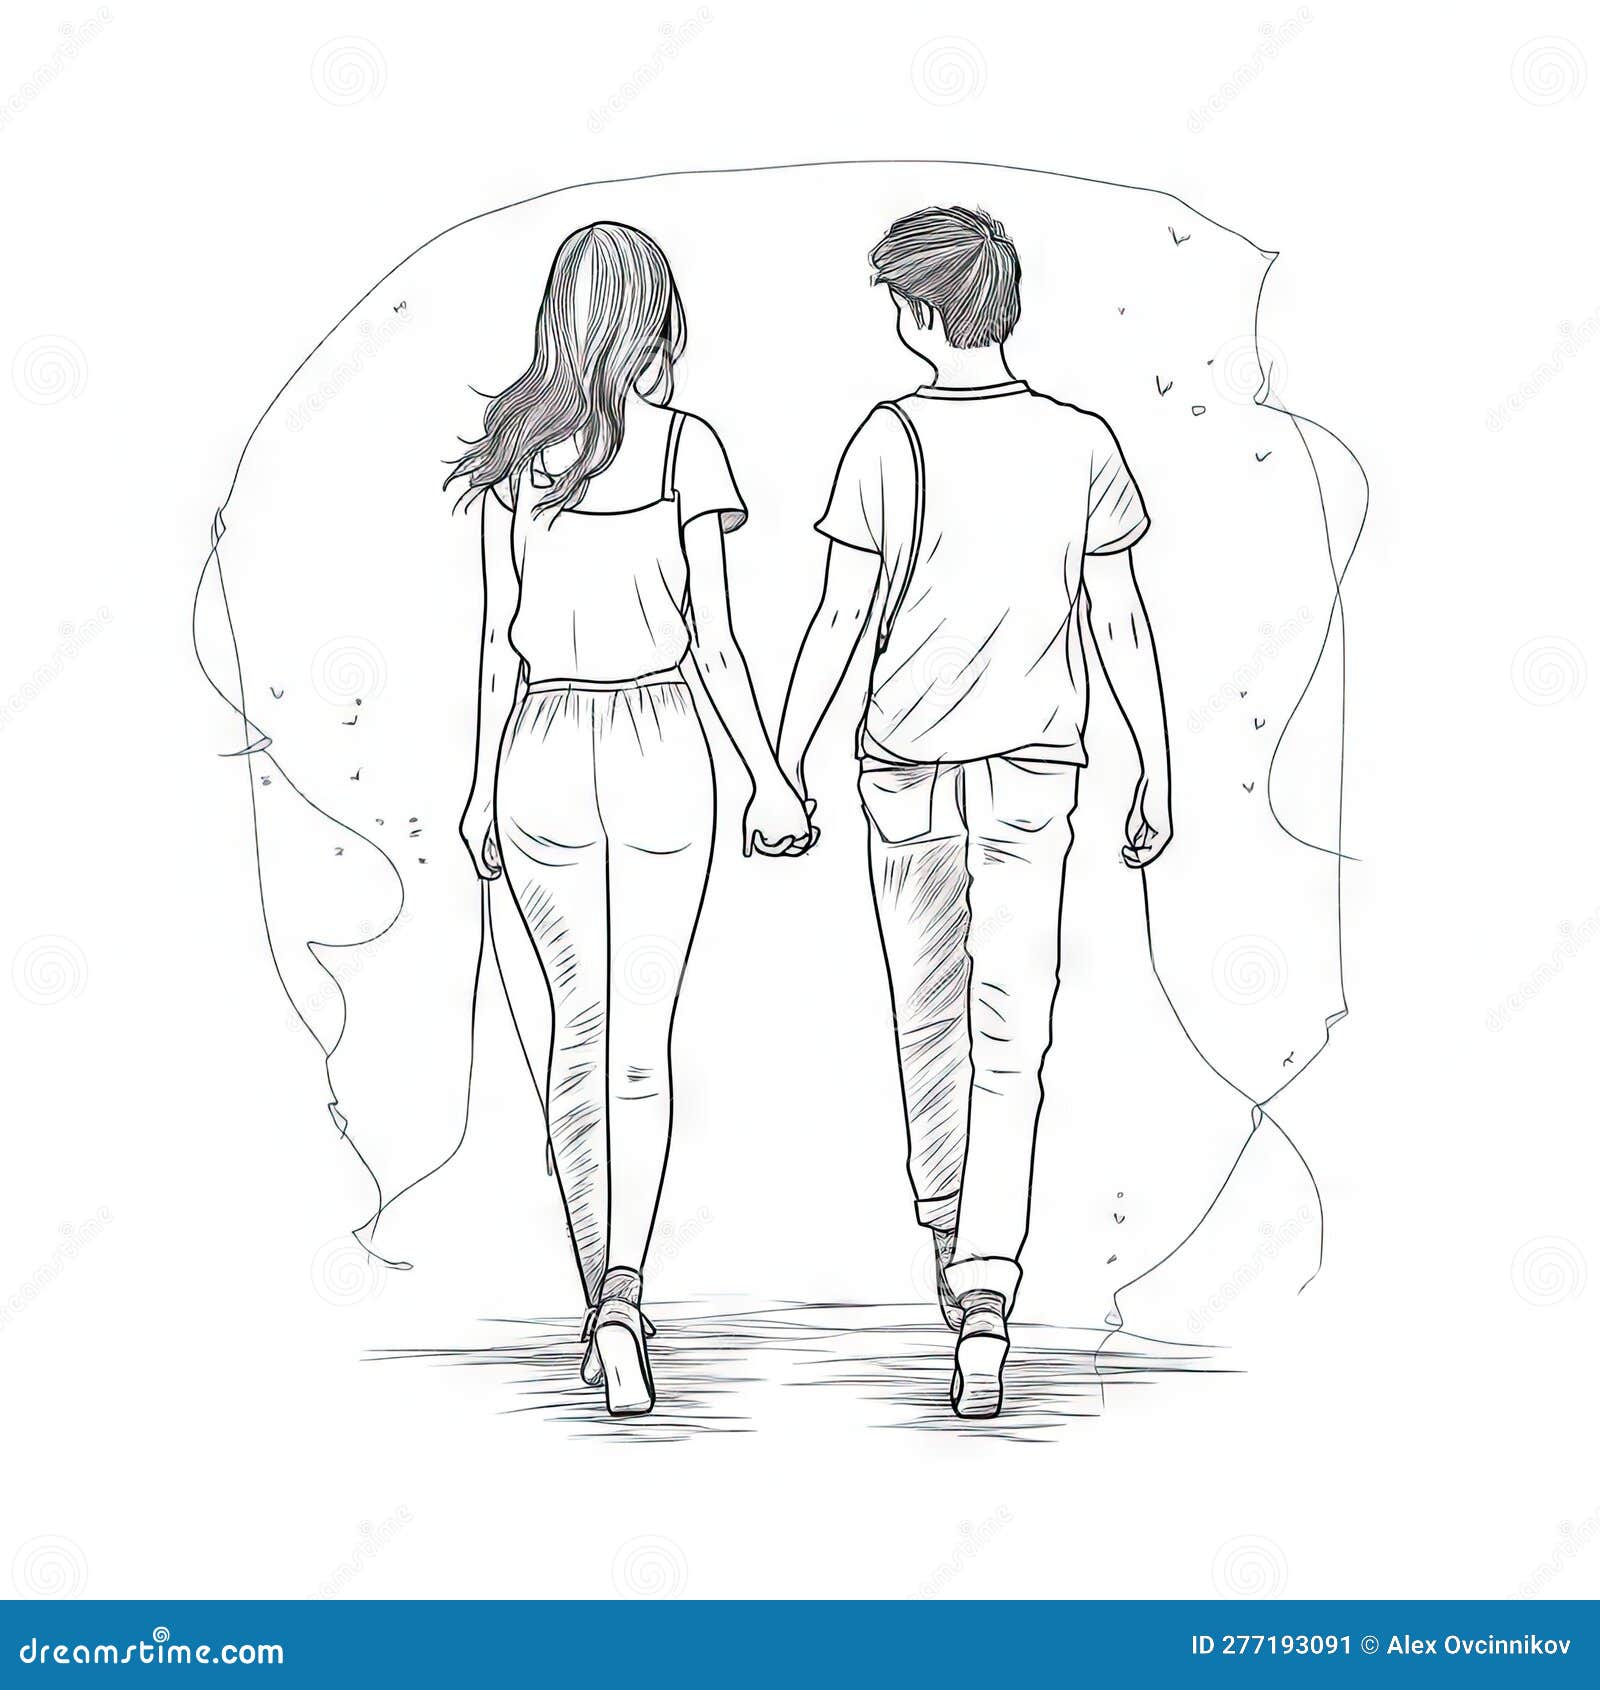 Pencil Sketch Romantic Couple in Love Art 15 Bundle - Etsy